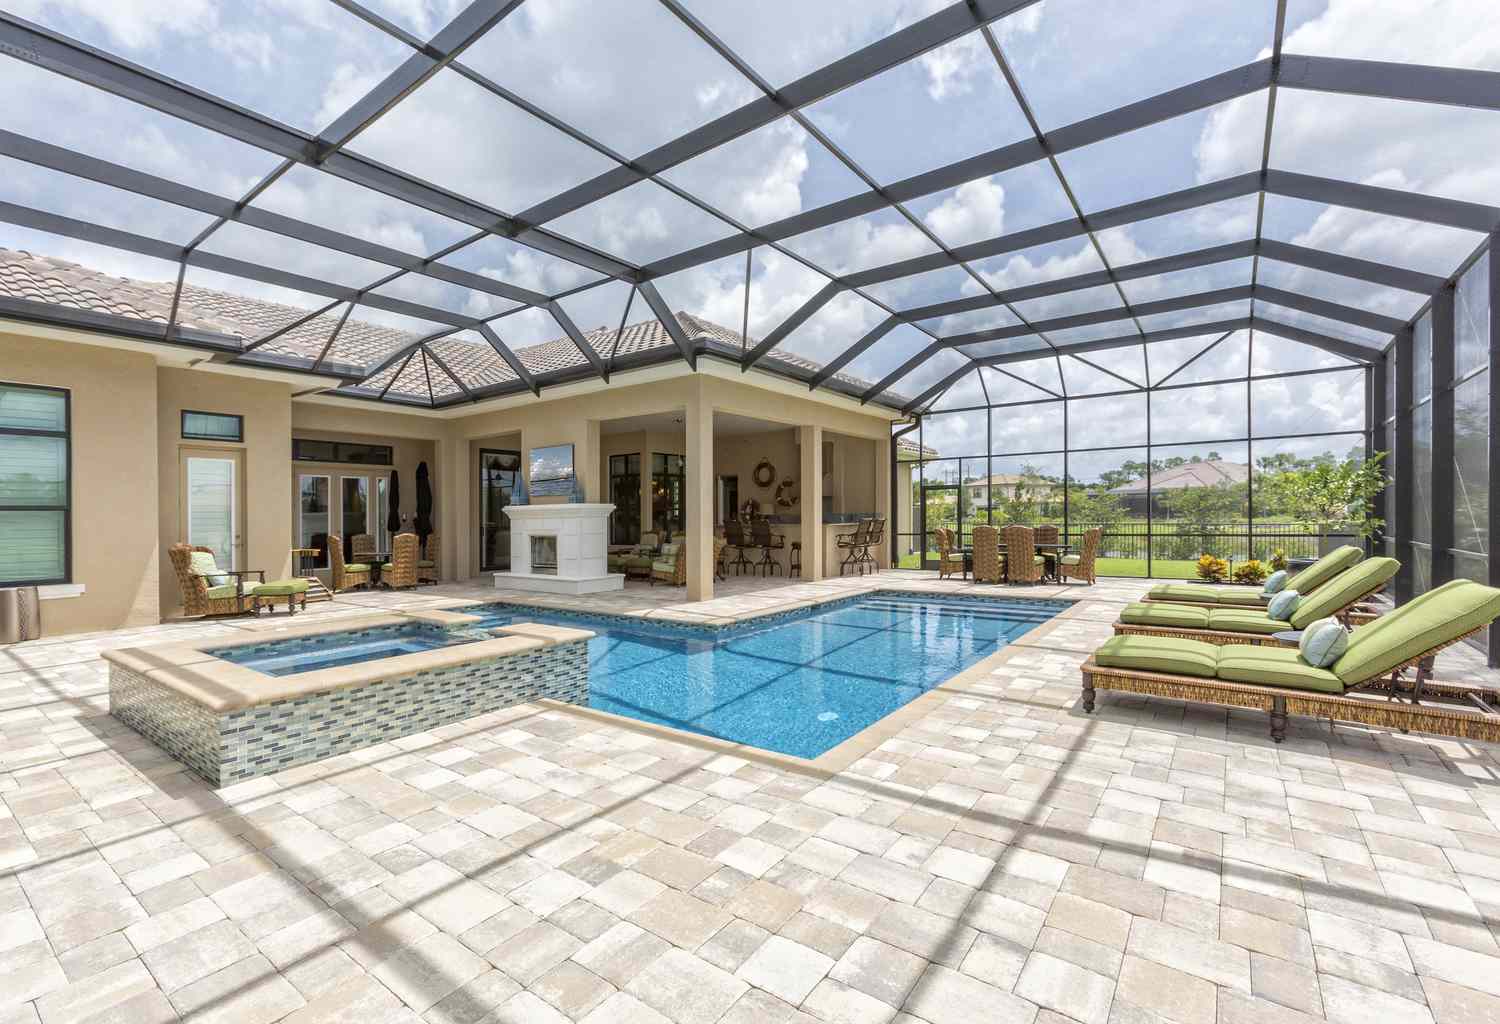 Uma piscina interna com teto de vidro e azulejos, bem como móveis verdes no pátio.